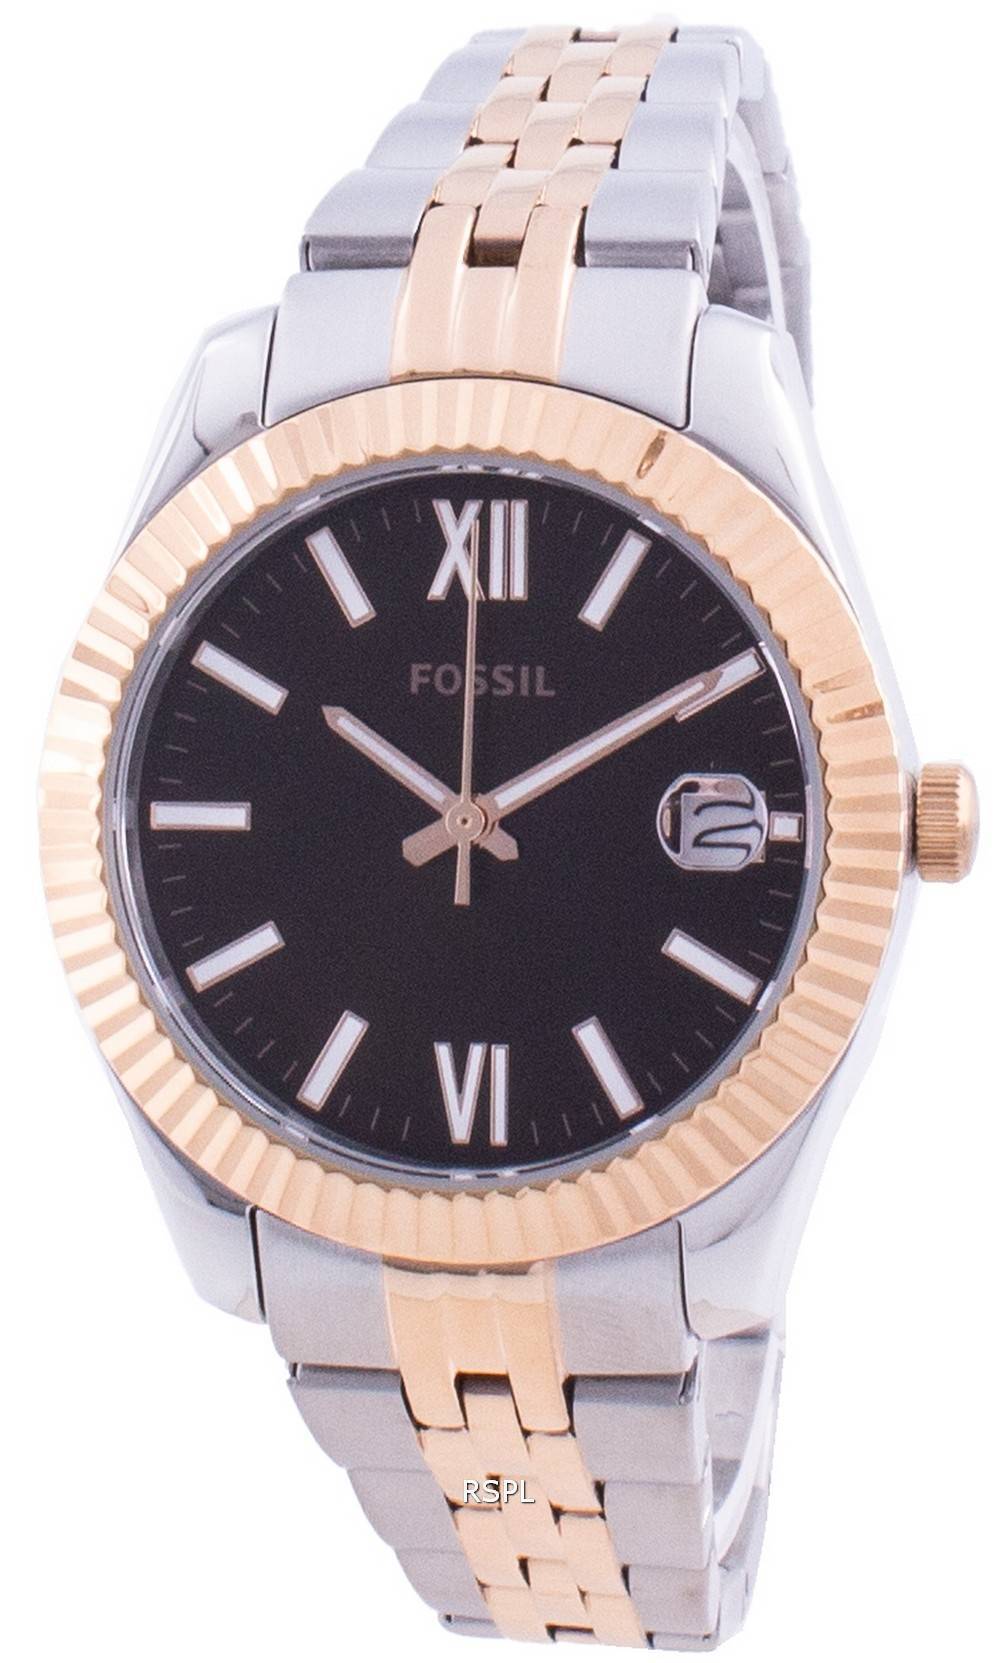 FossilスカーレットミニES4821クォーツレディース腕時計 Japan